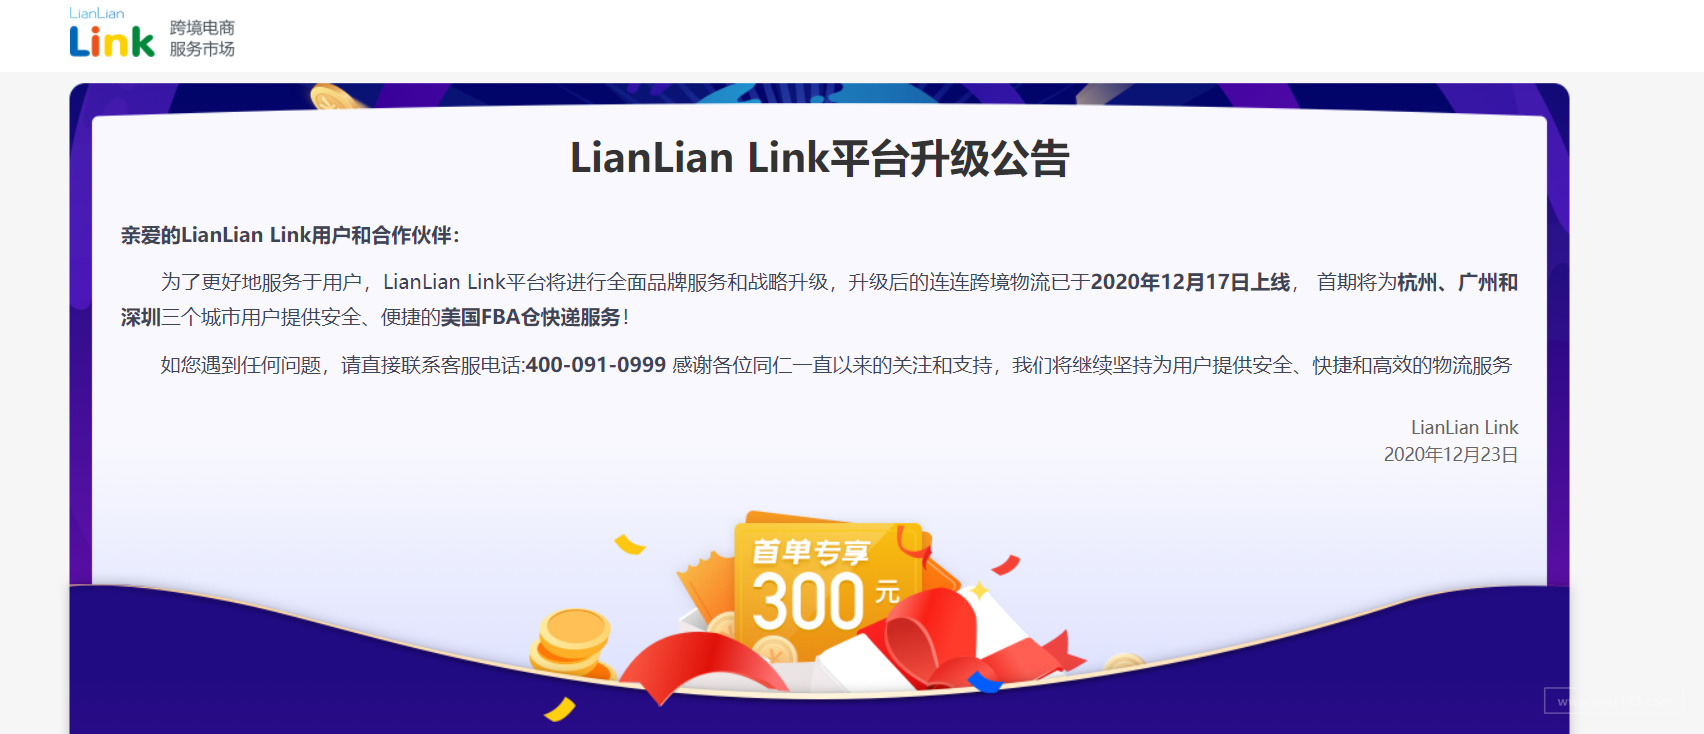 LianLian Link